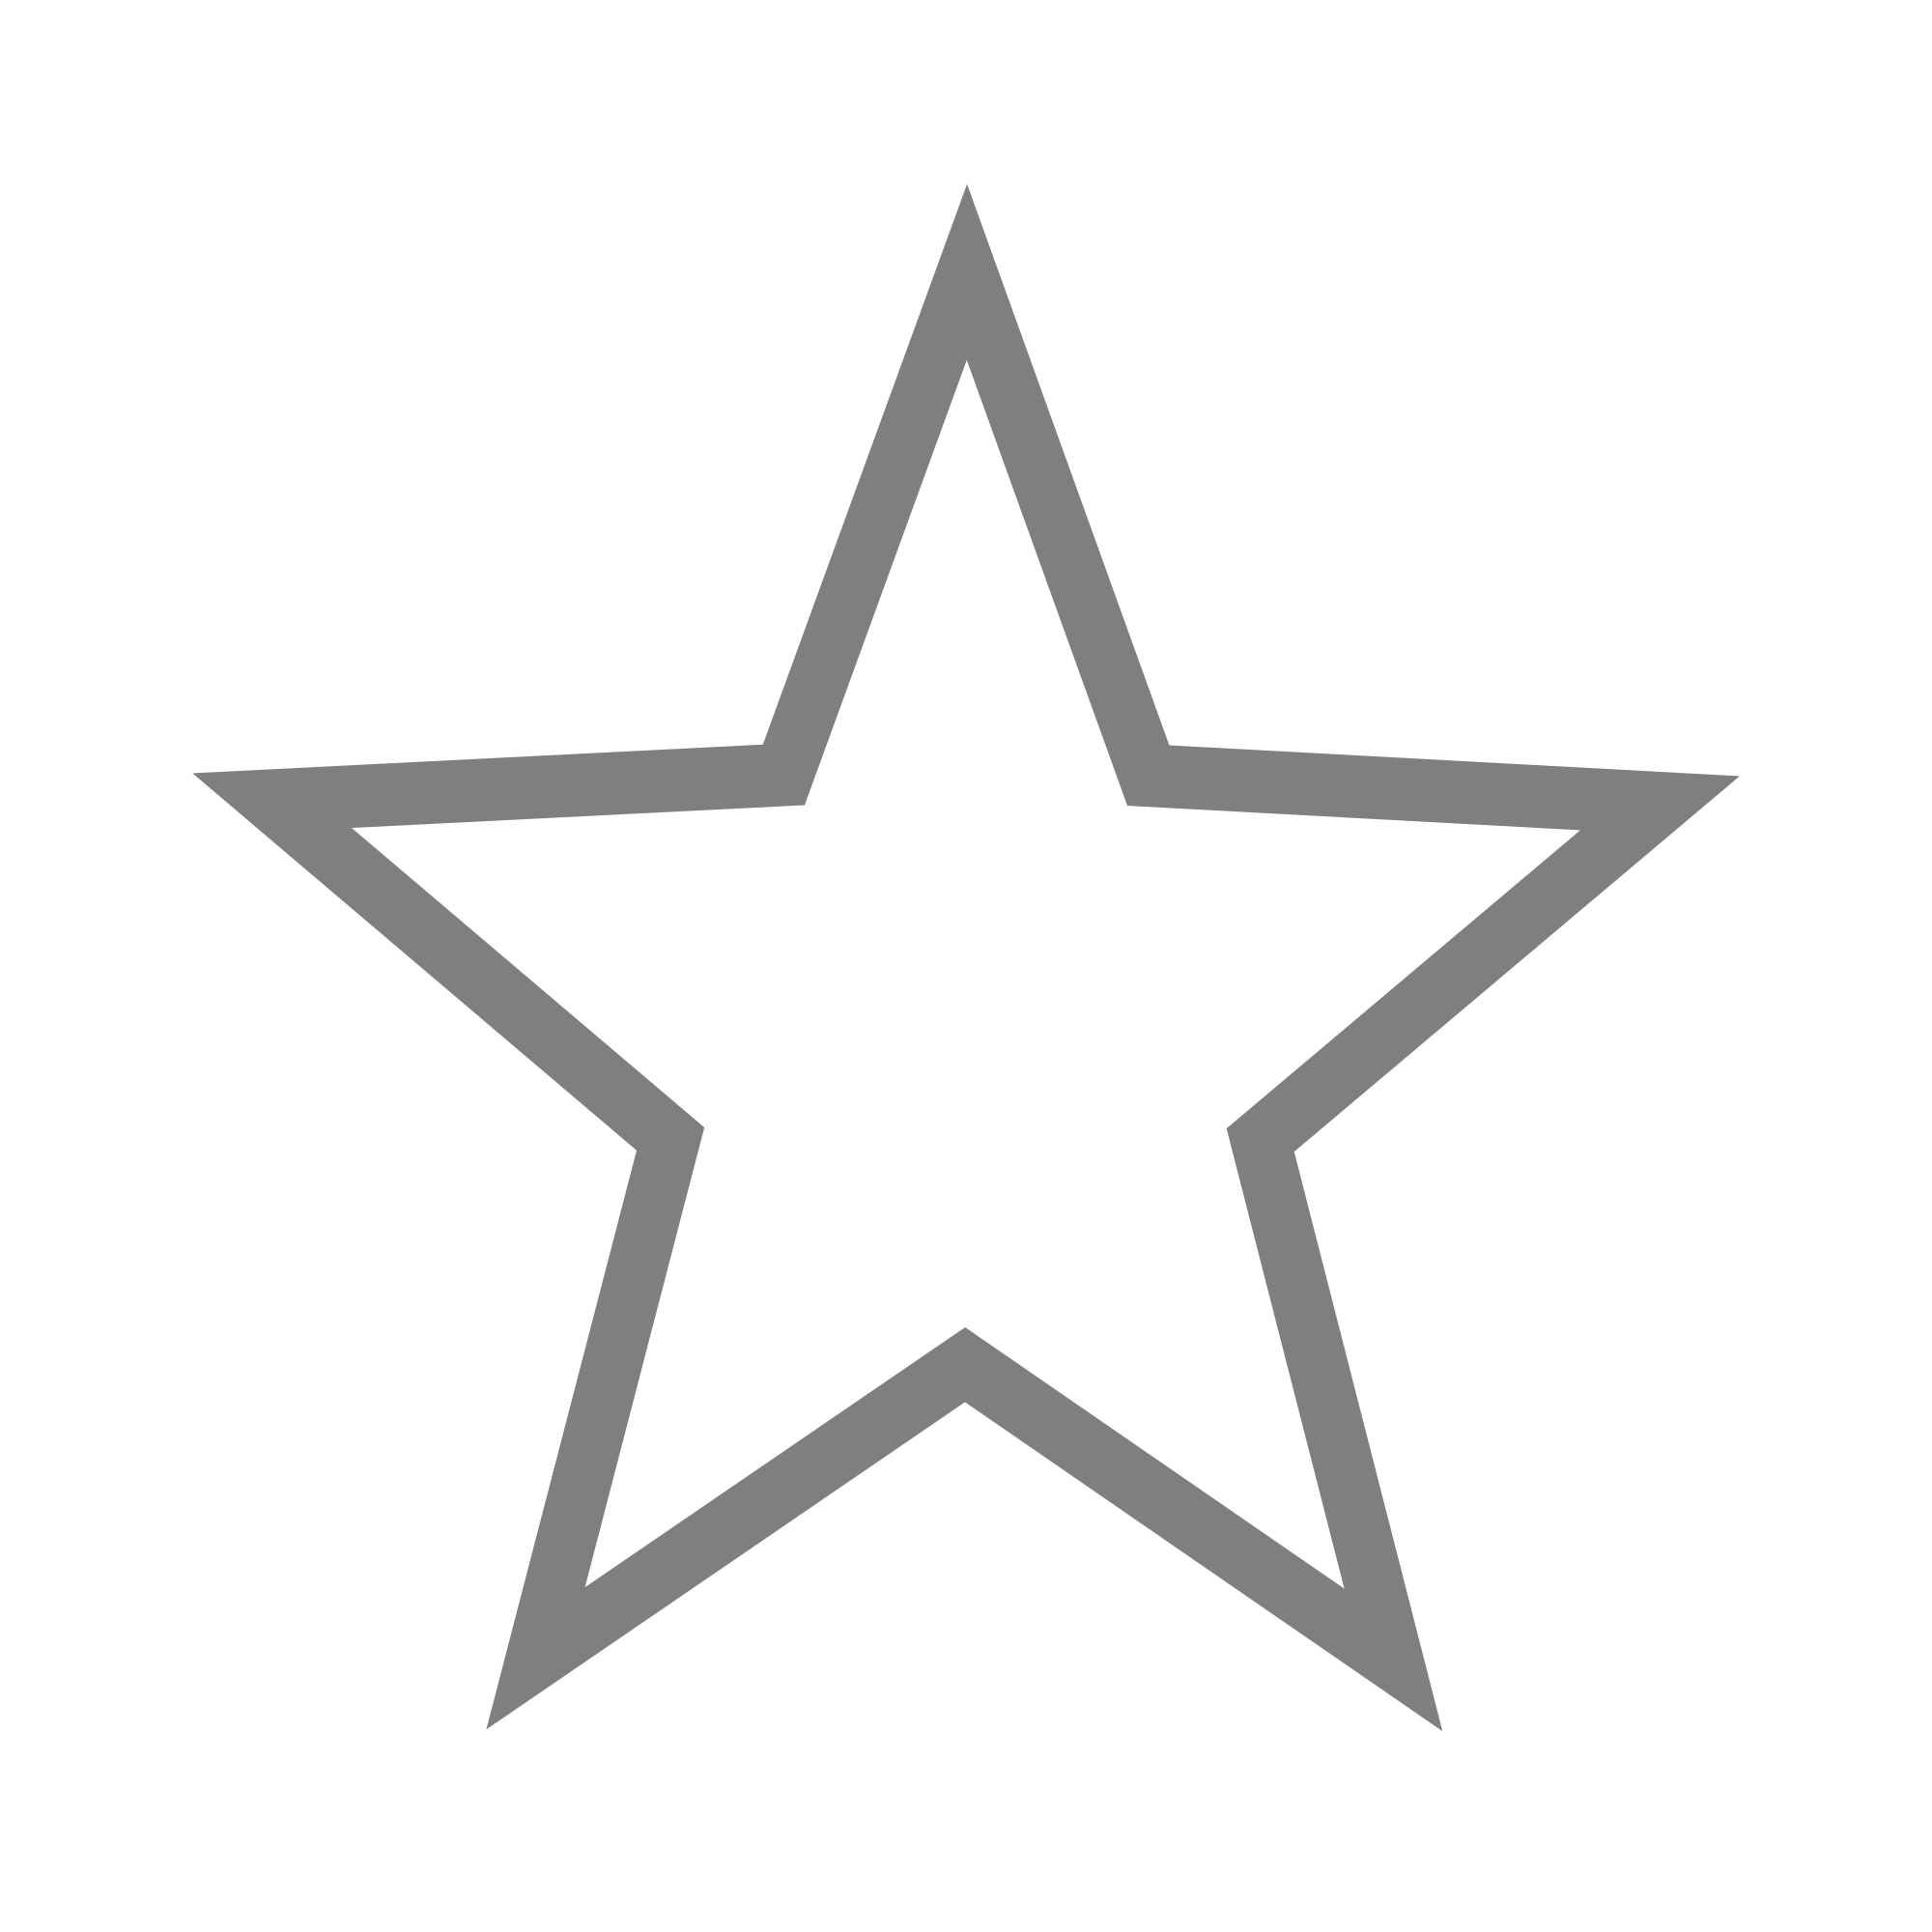 grey star